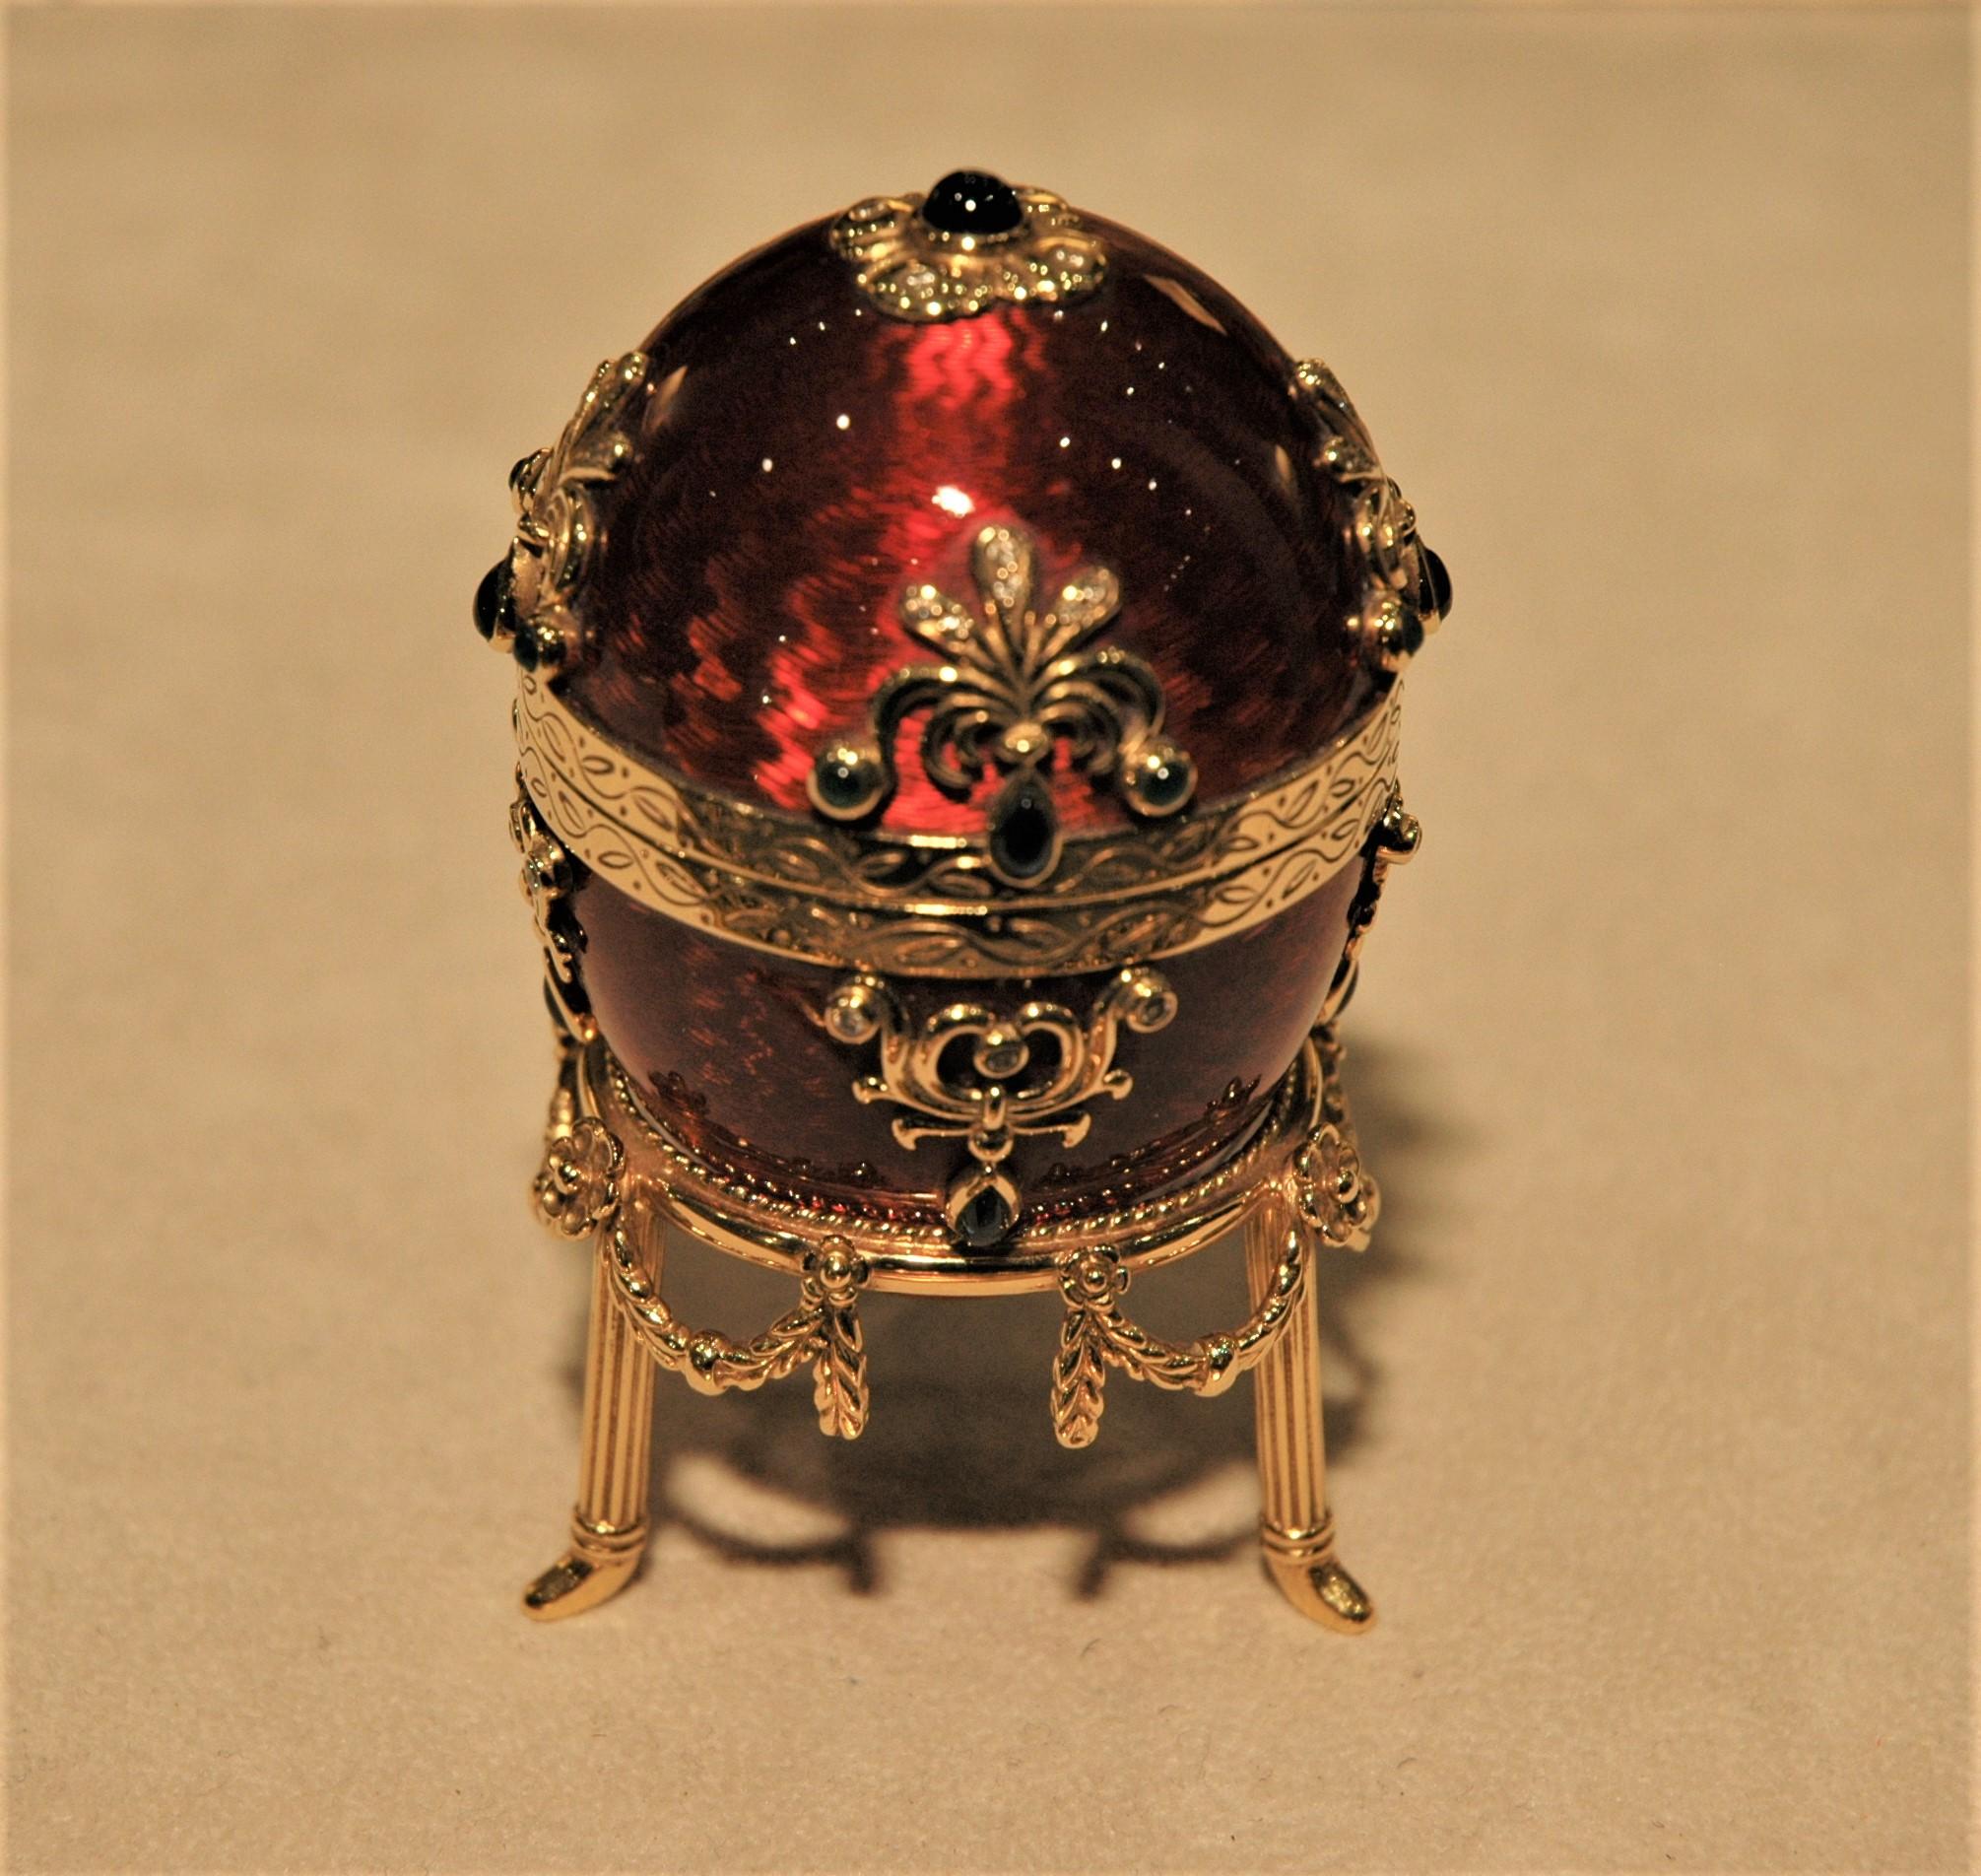 Rare oeuf en or de Fabergé avec son support en or. Elle est décorée d'émail guilloché rouge et de pierres précieuses : émeraudes (0,40 carats), saphirs (3,15 carats), diamants (0,56 carats). Il s'ouvre et on peut y glisser une bague spéciale. Il